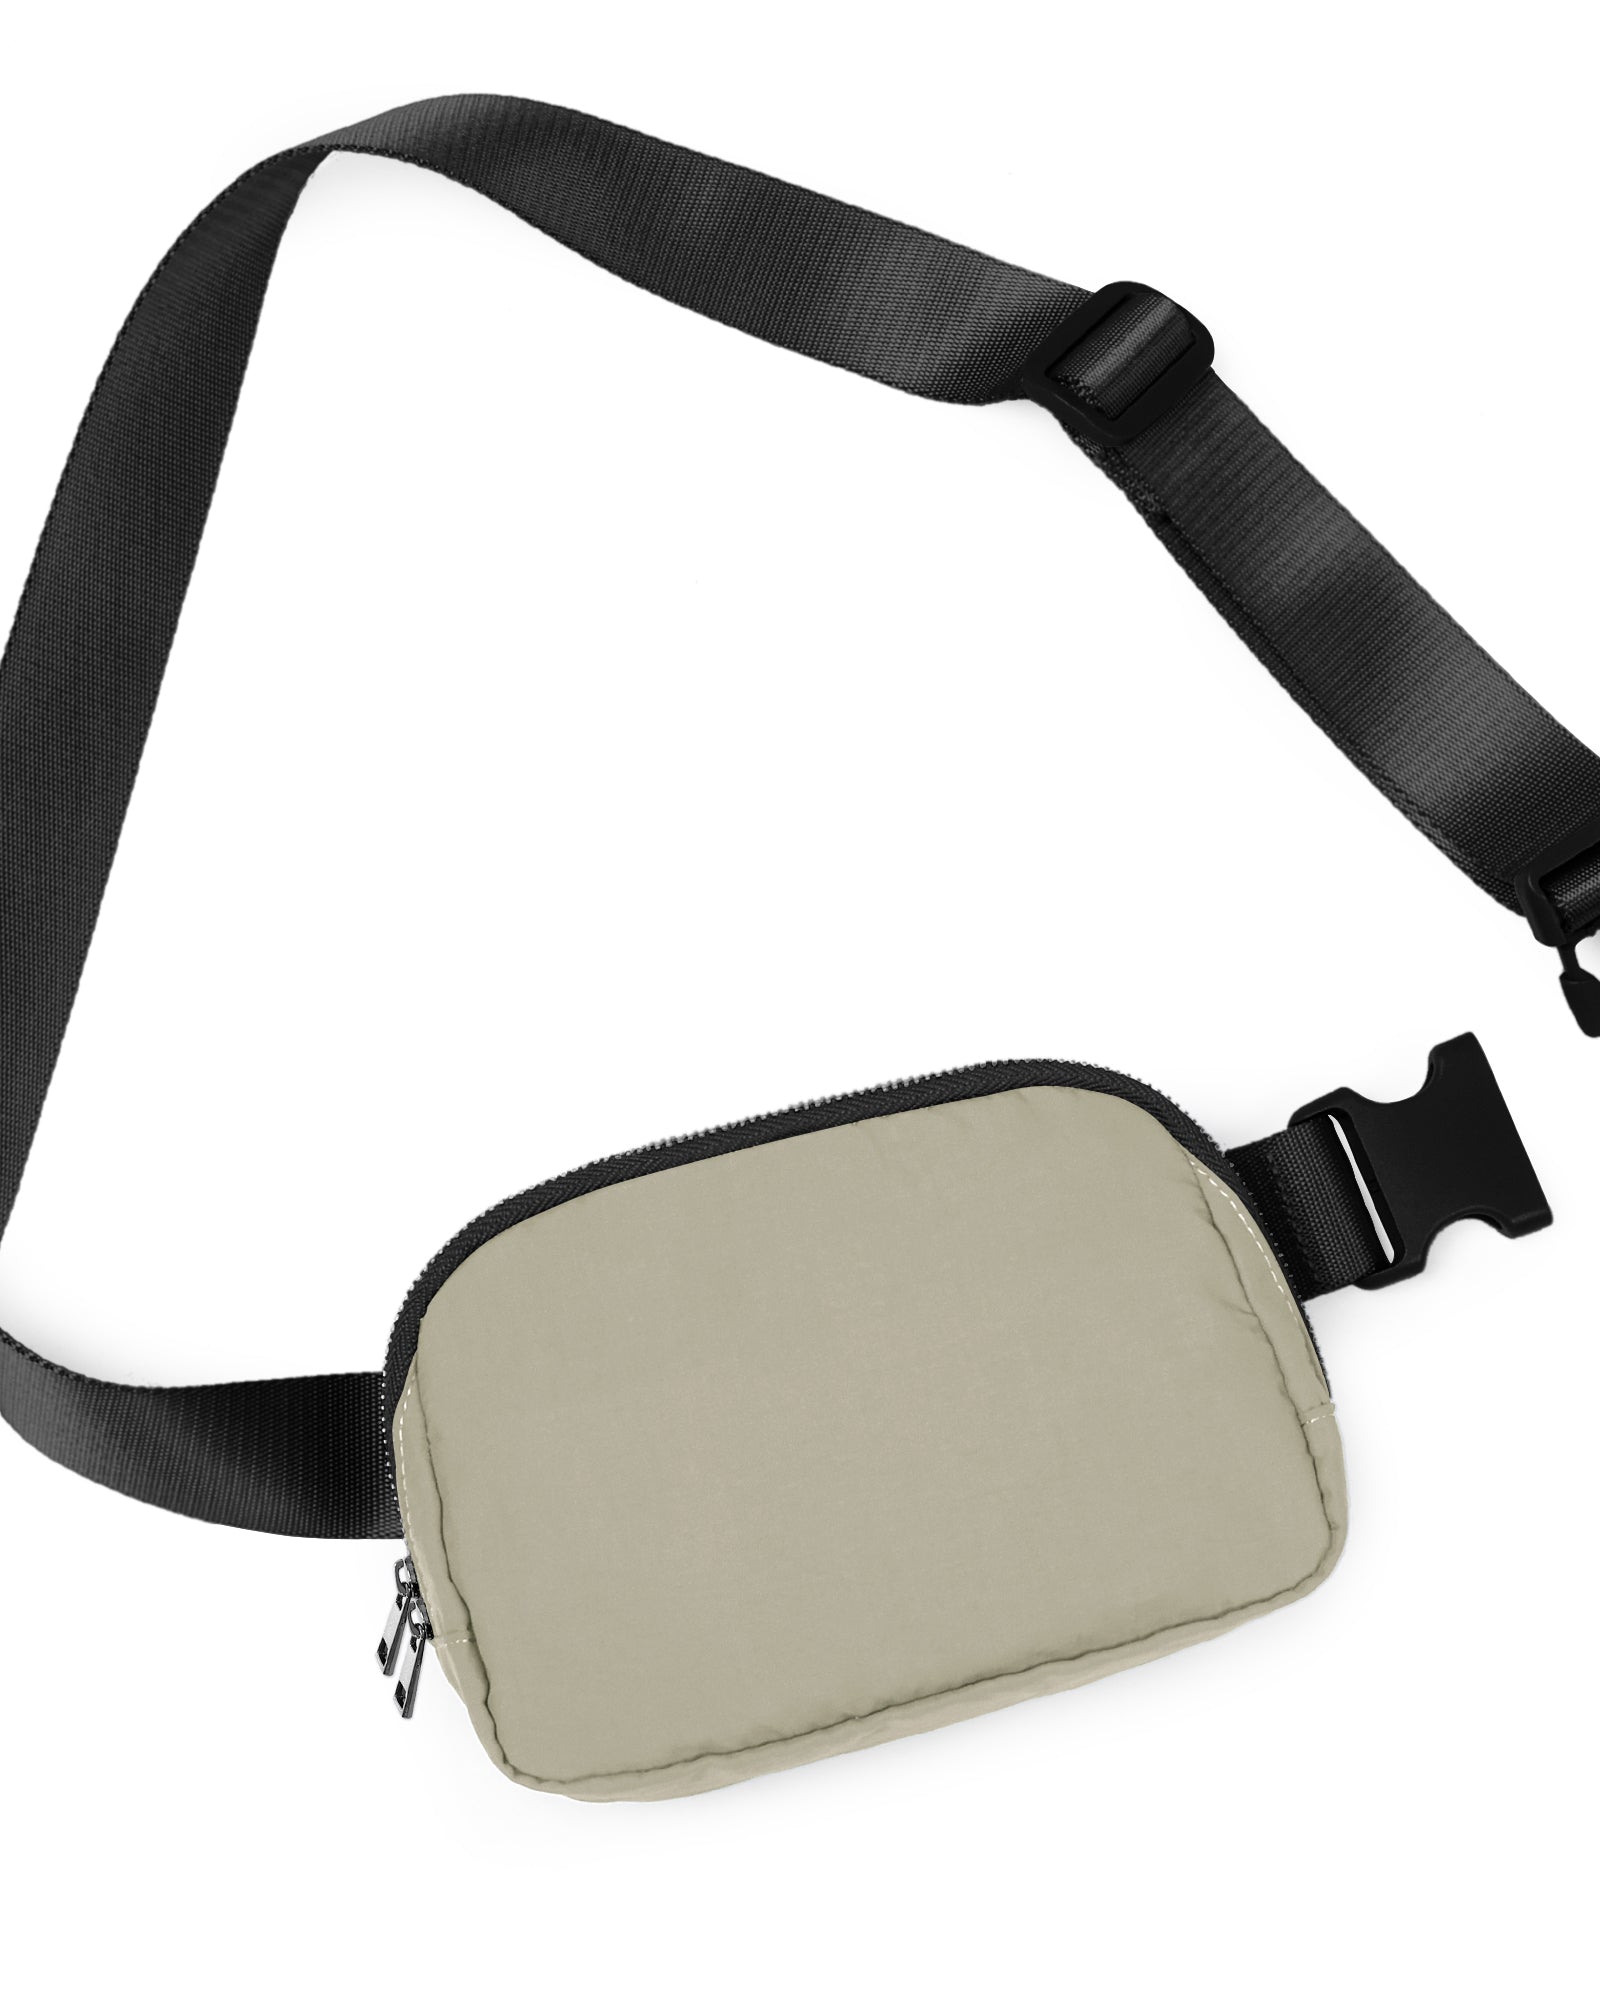 Unisex Two-Way Zip Mini Belt Bag Khaki 8" x 2" x 5.5" - ododos